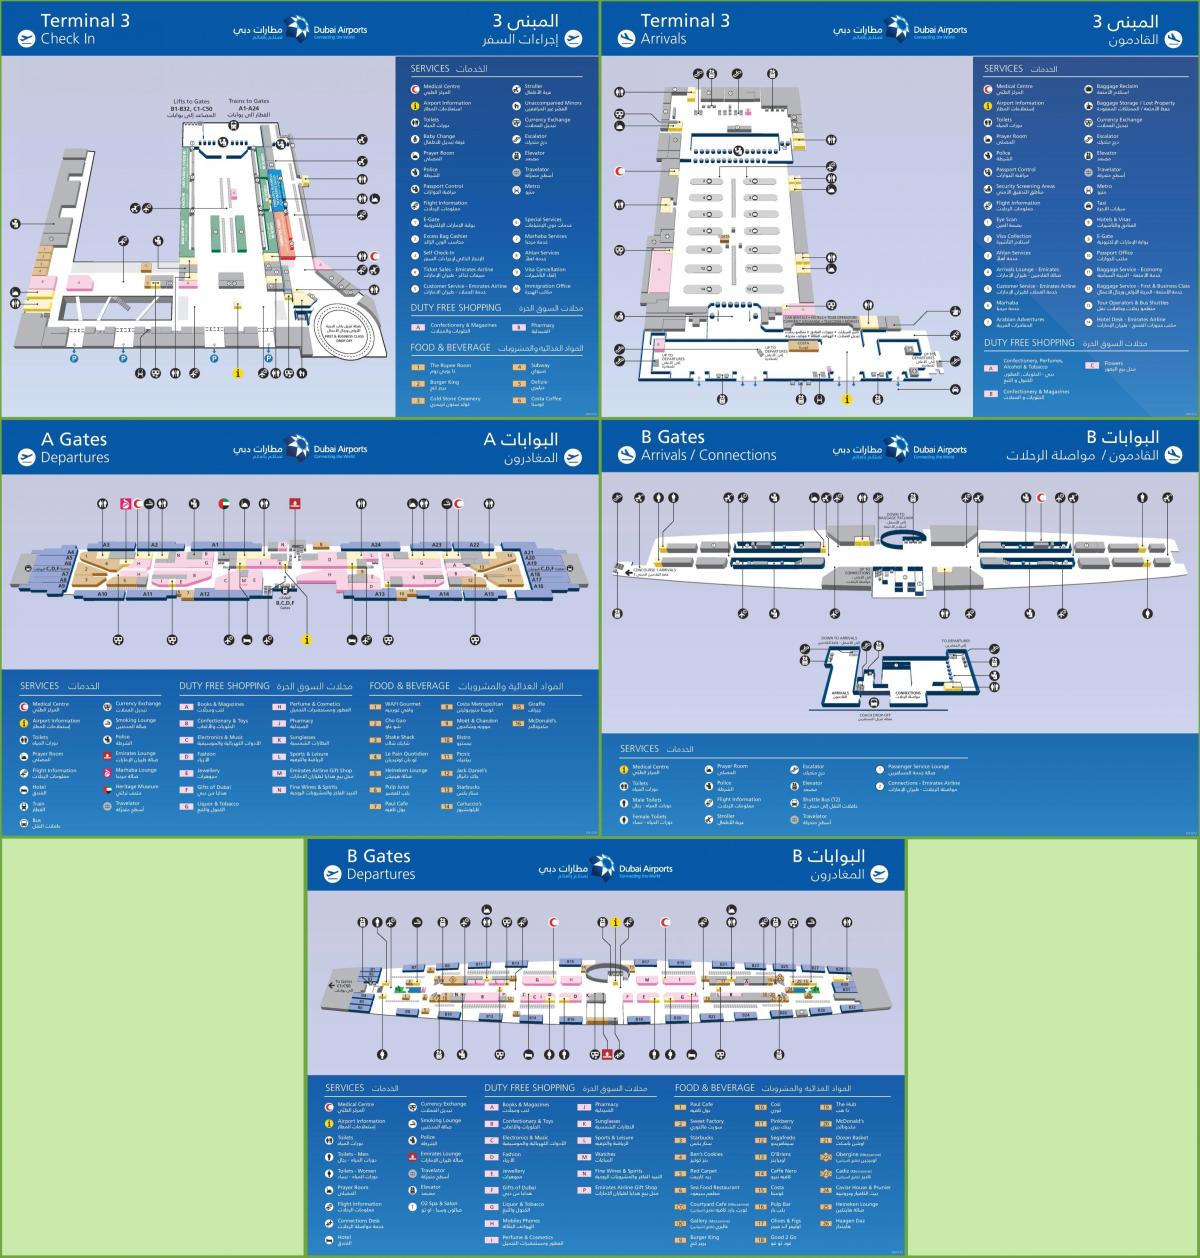 Dubai international airport terminal 3 Karte anzeigen